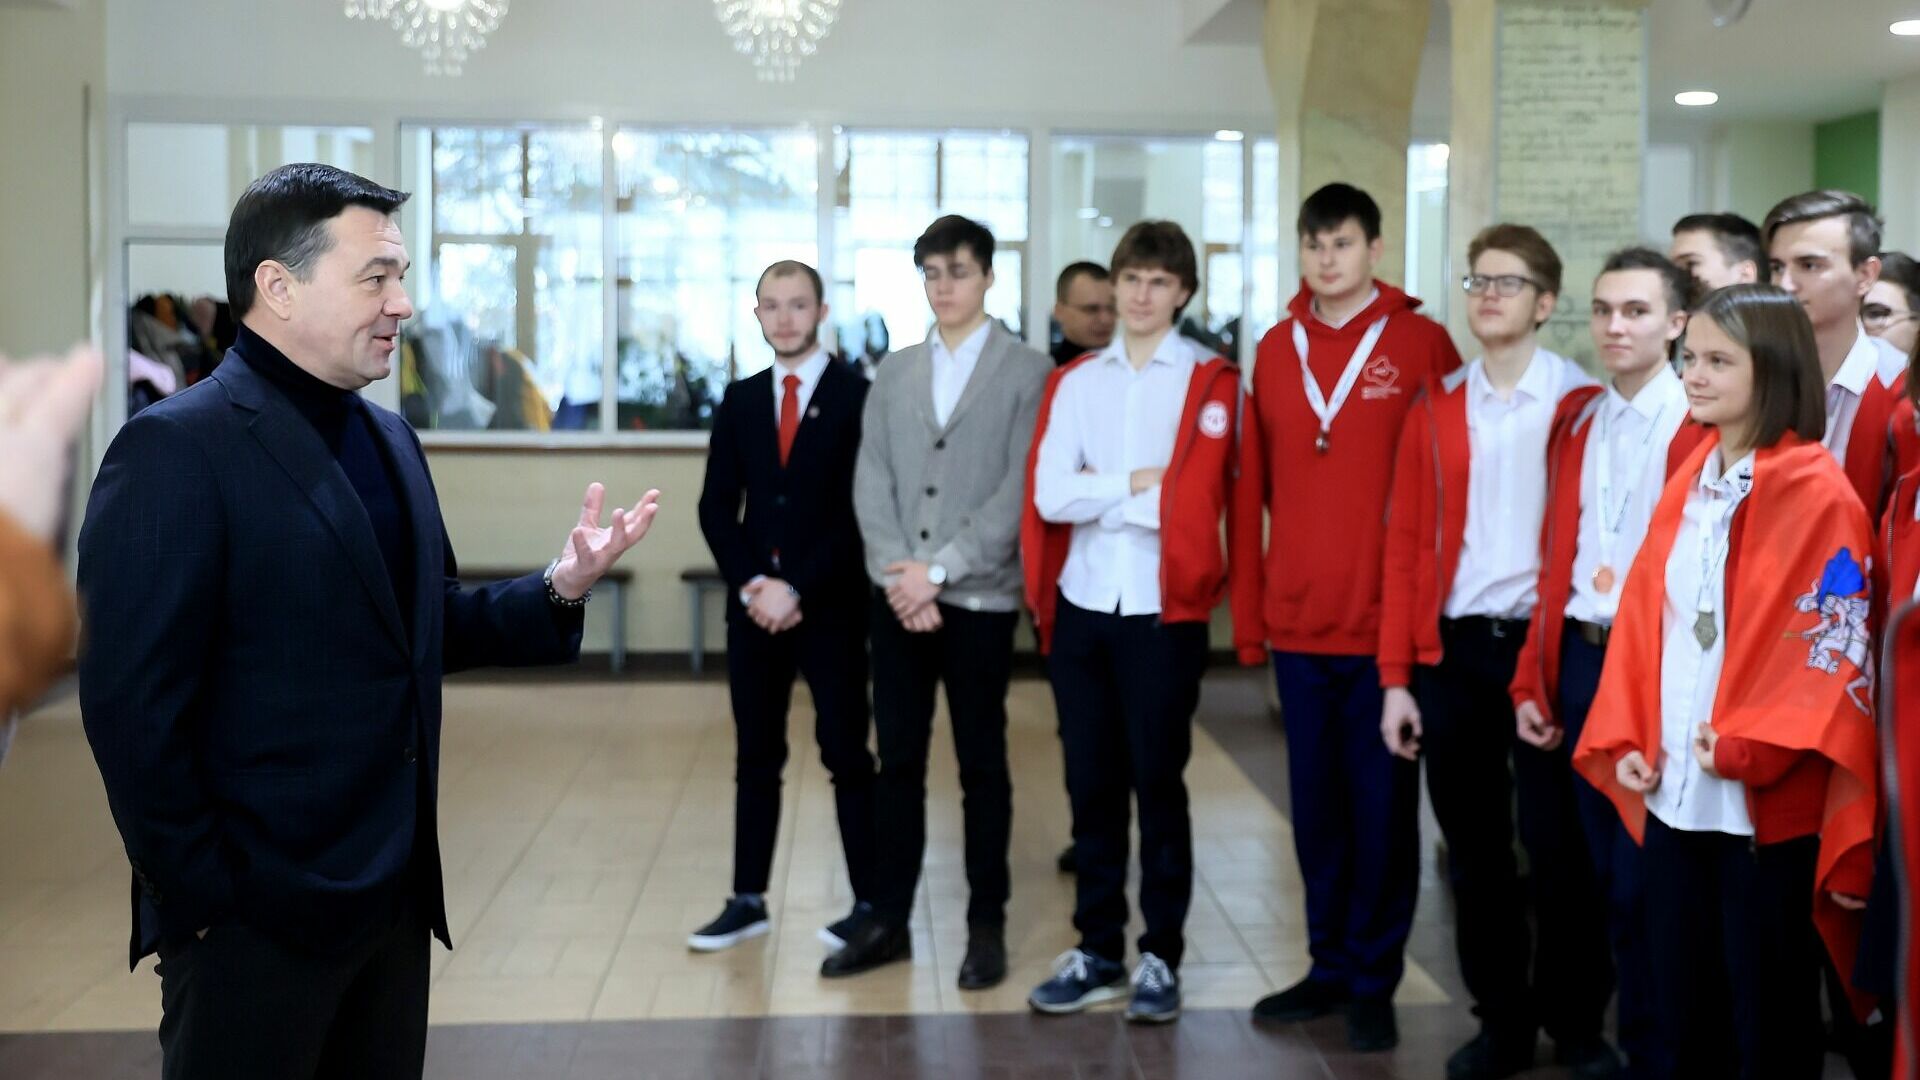 Андрей Воробьев поздравил школьников Подмосковья с успехом на олимпиаде по физике